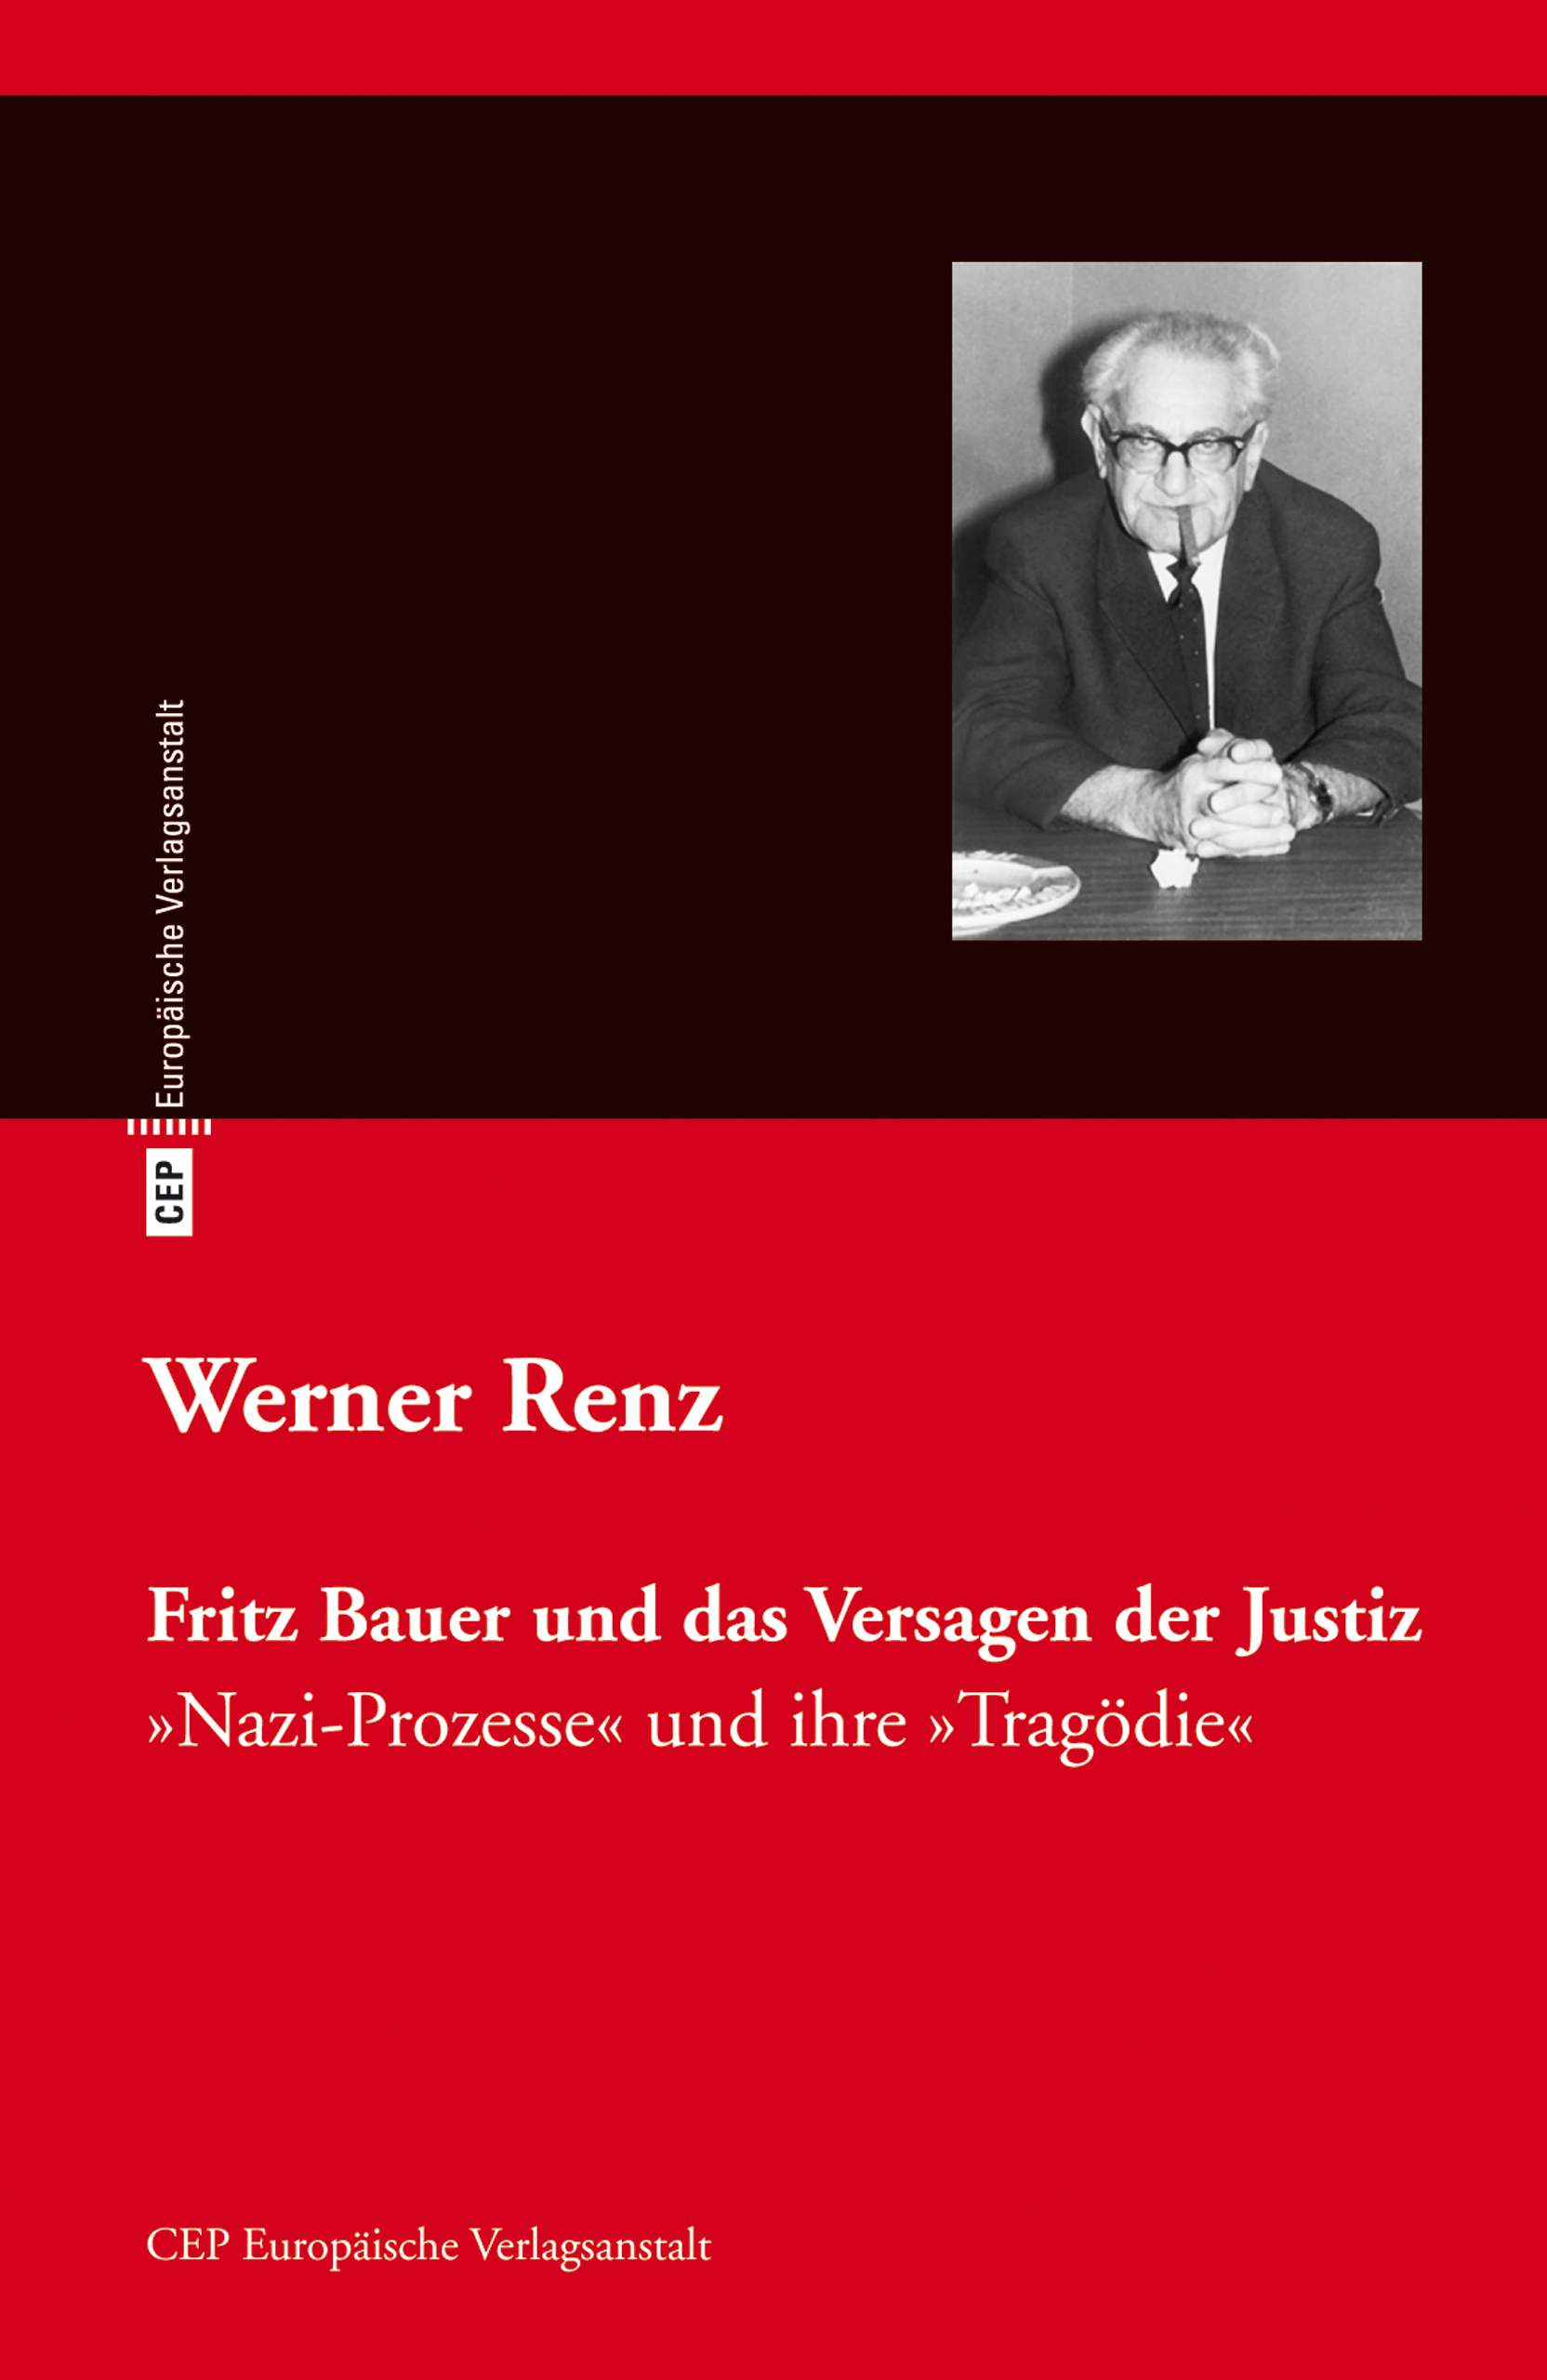 Fritz Bauer und das Versagen der Justiz